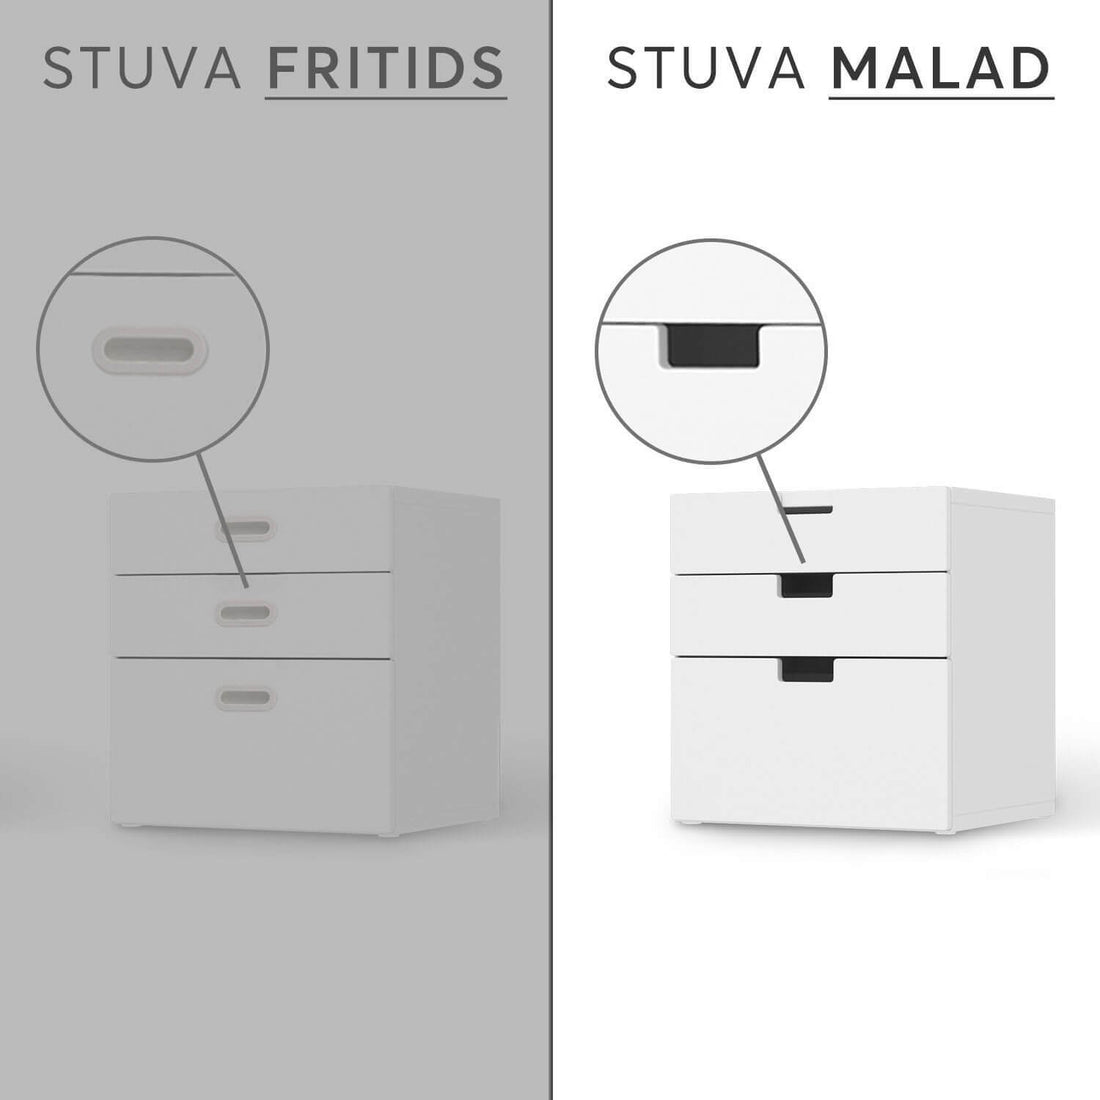 Folie für Möbel IKEA Stuva / Malad Kommode - 3 Schubladen - Design: Machu Picchu